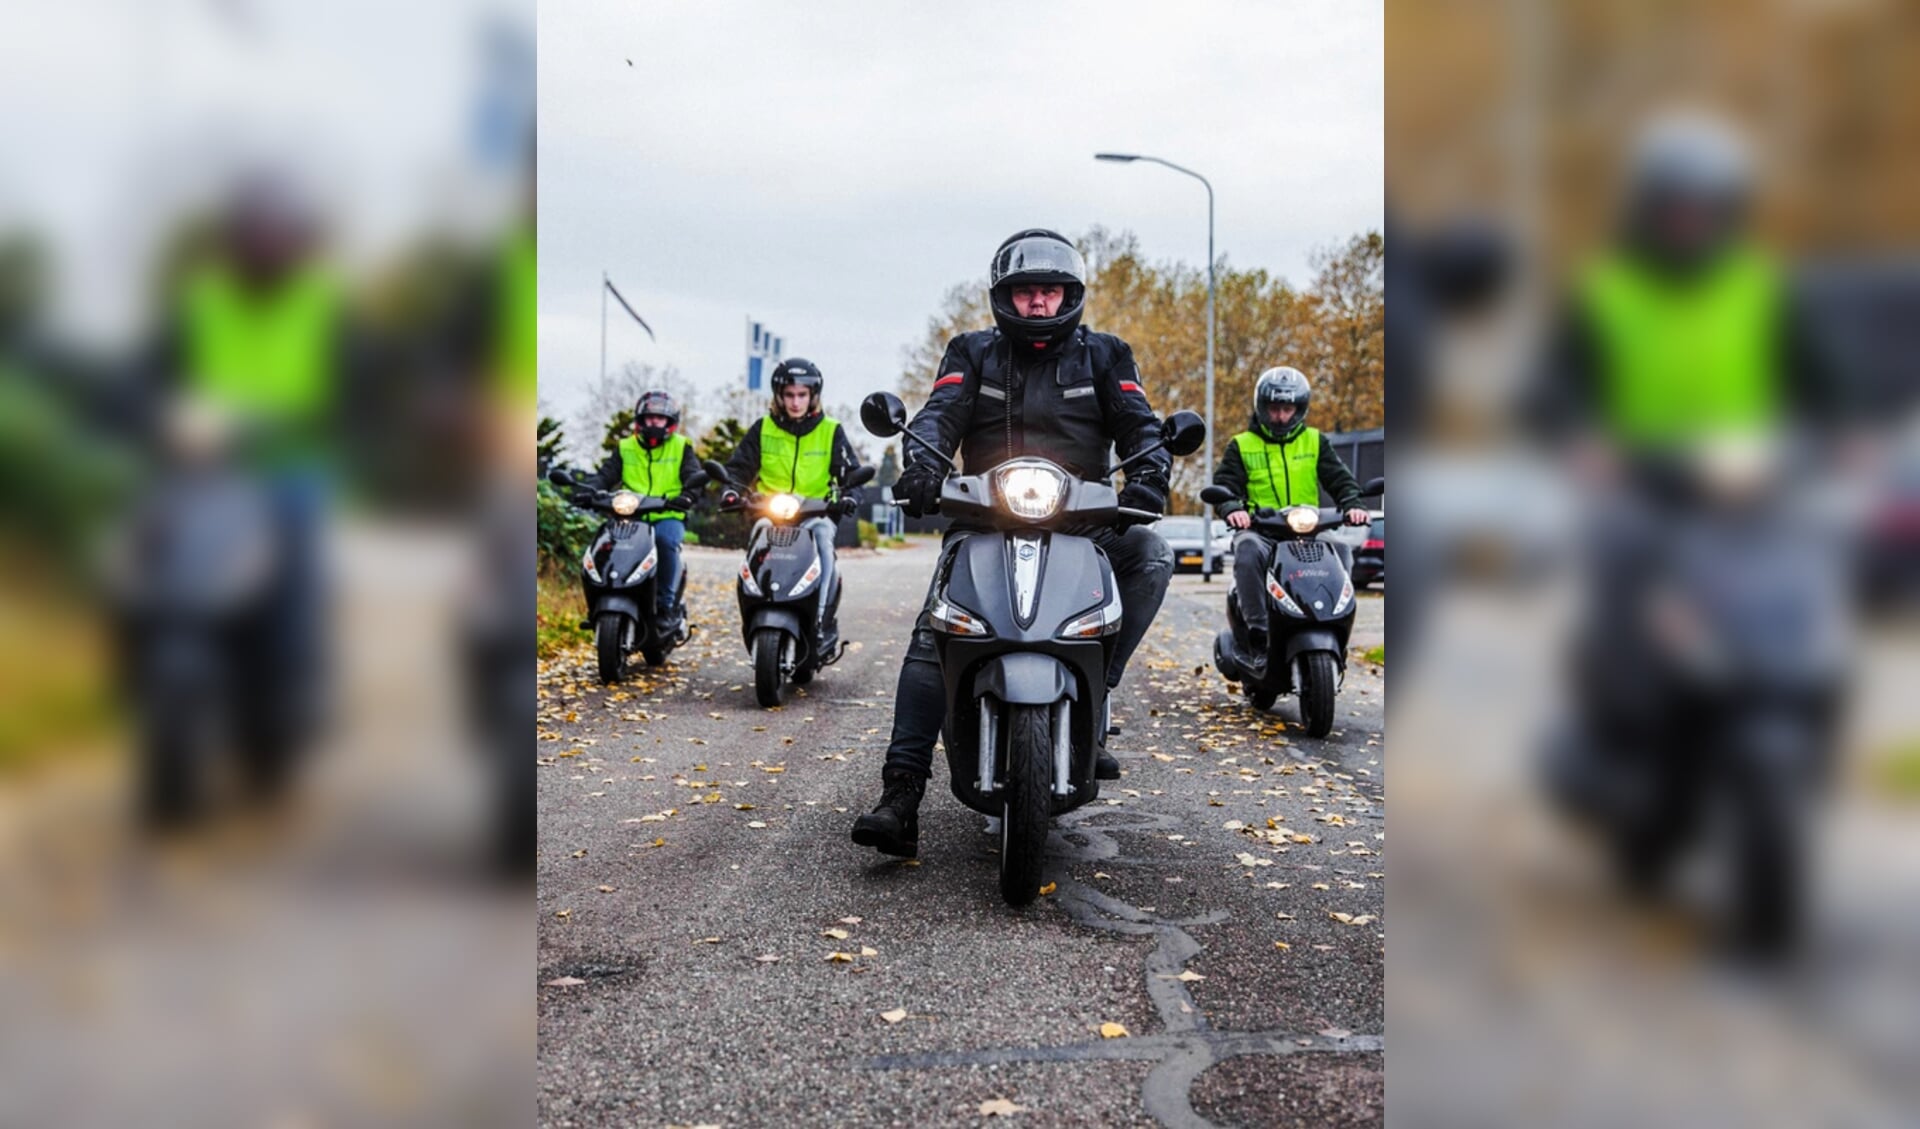 Marcel Nieuwland uit Groningen (foto) startte vorige week zaterdag weer met motorrijlessen. Dit zorgde aanvankelijk voor veel onrust, maar een week later mag weer worden gelest op motor, bromfiets en scooter.